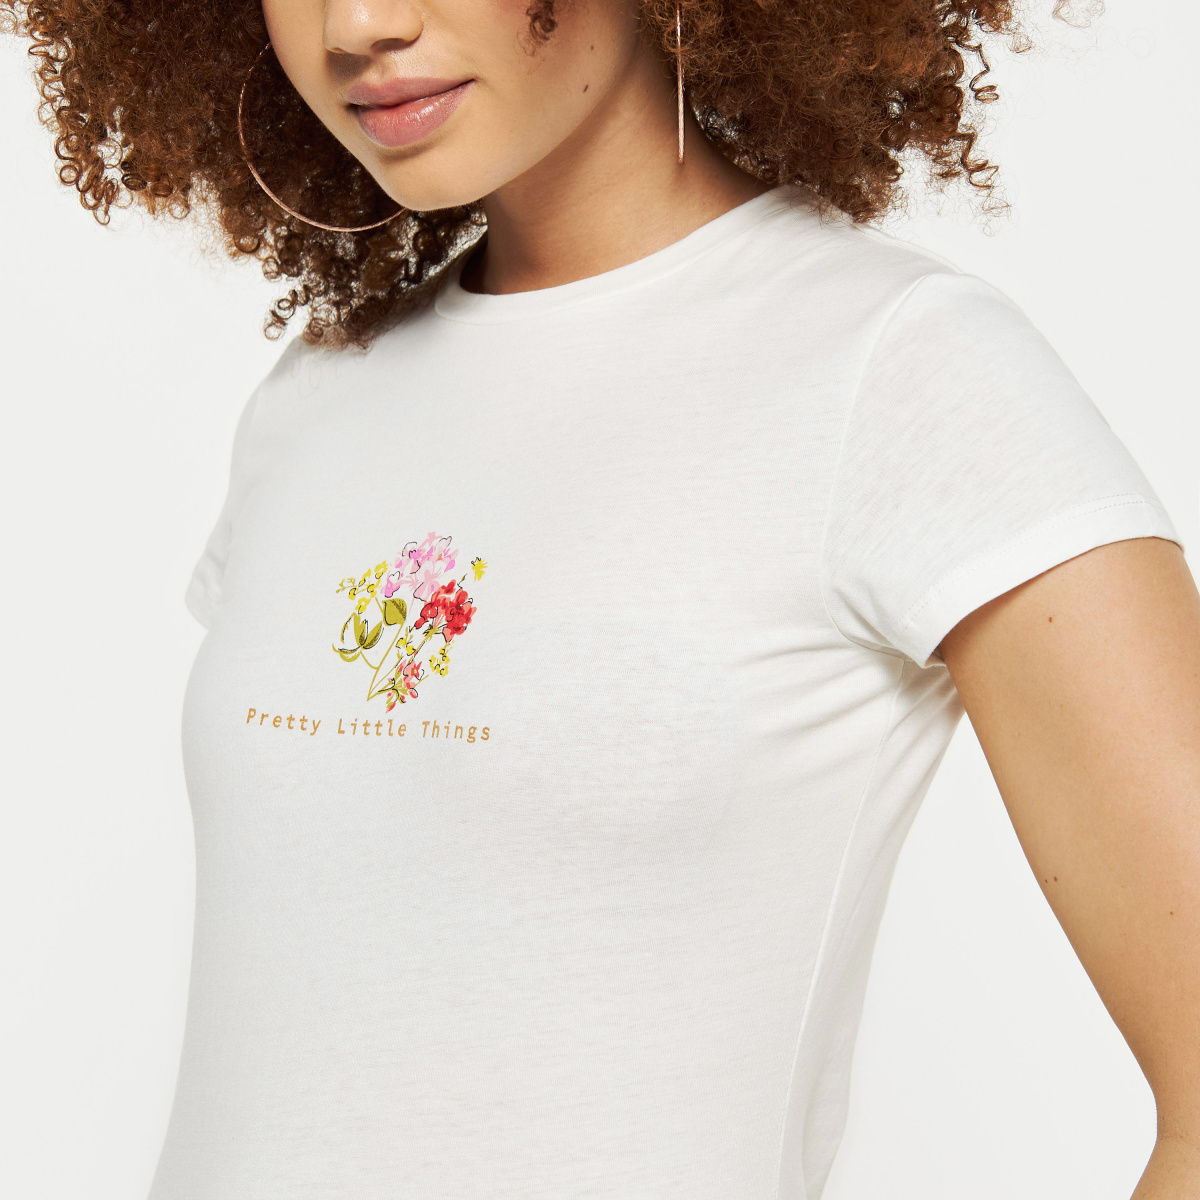 Flower Women's White Short Sleeve Graphic T Shirt For Flower